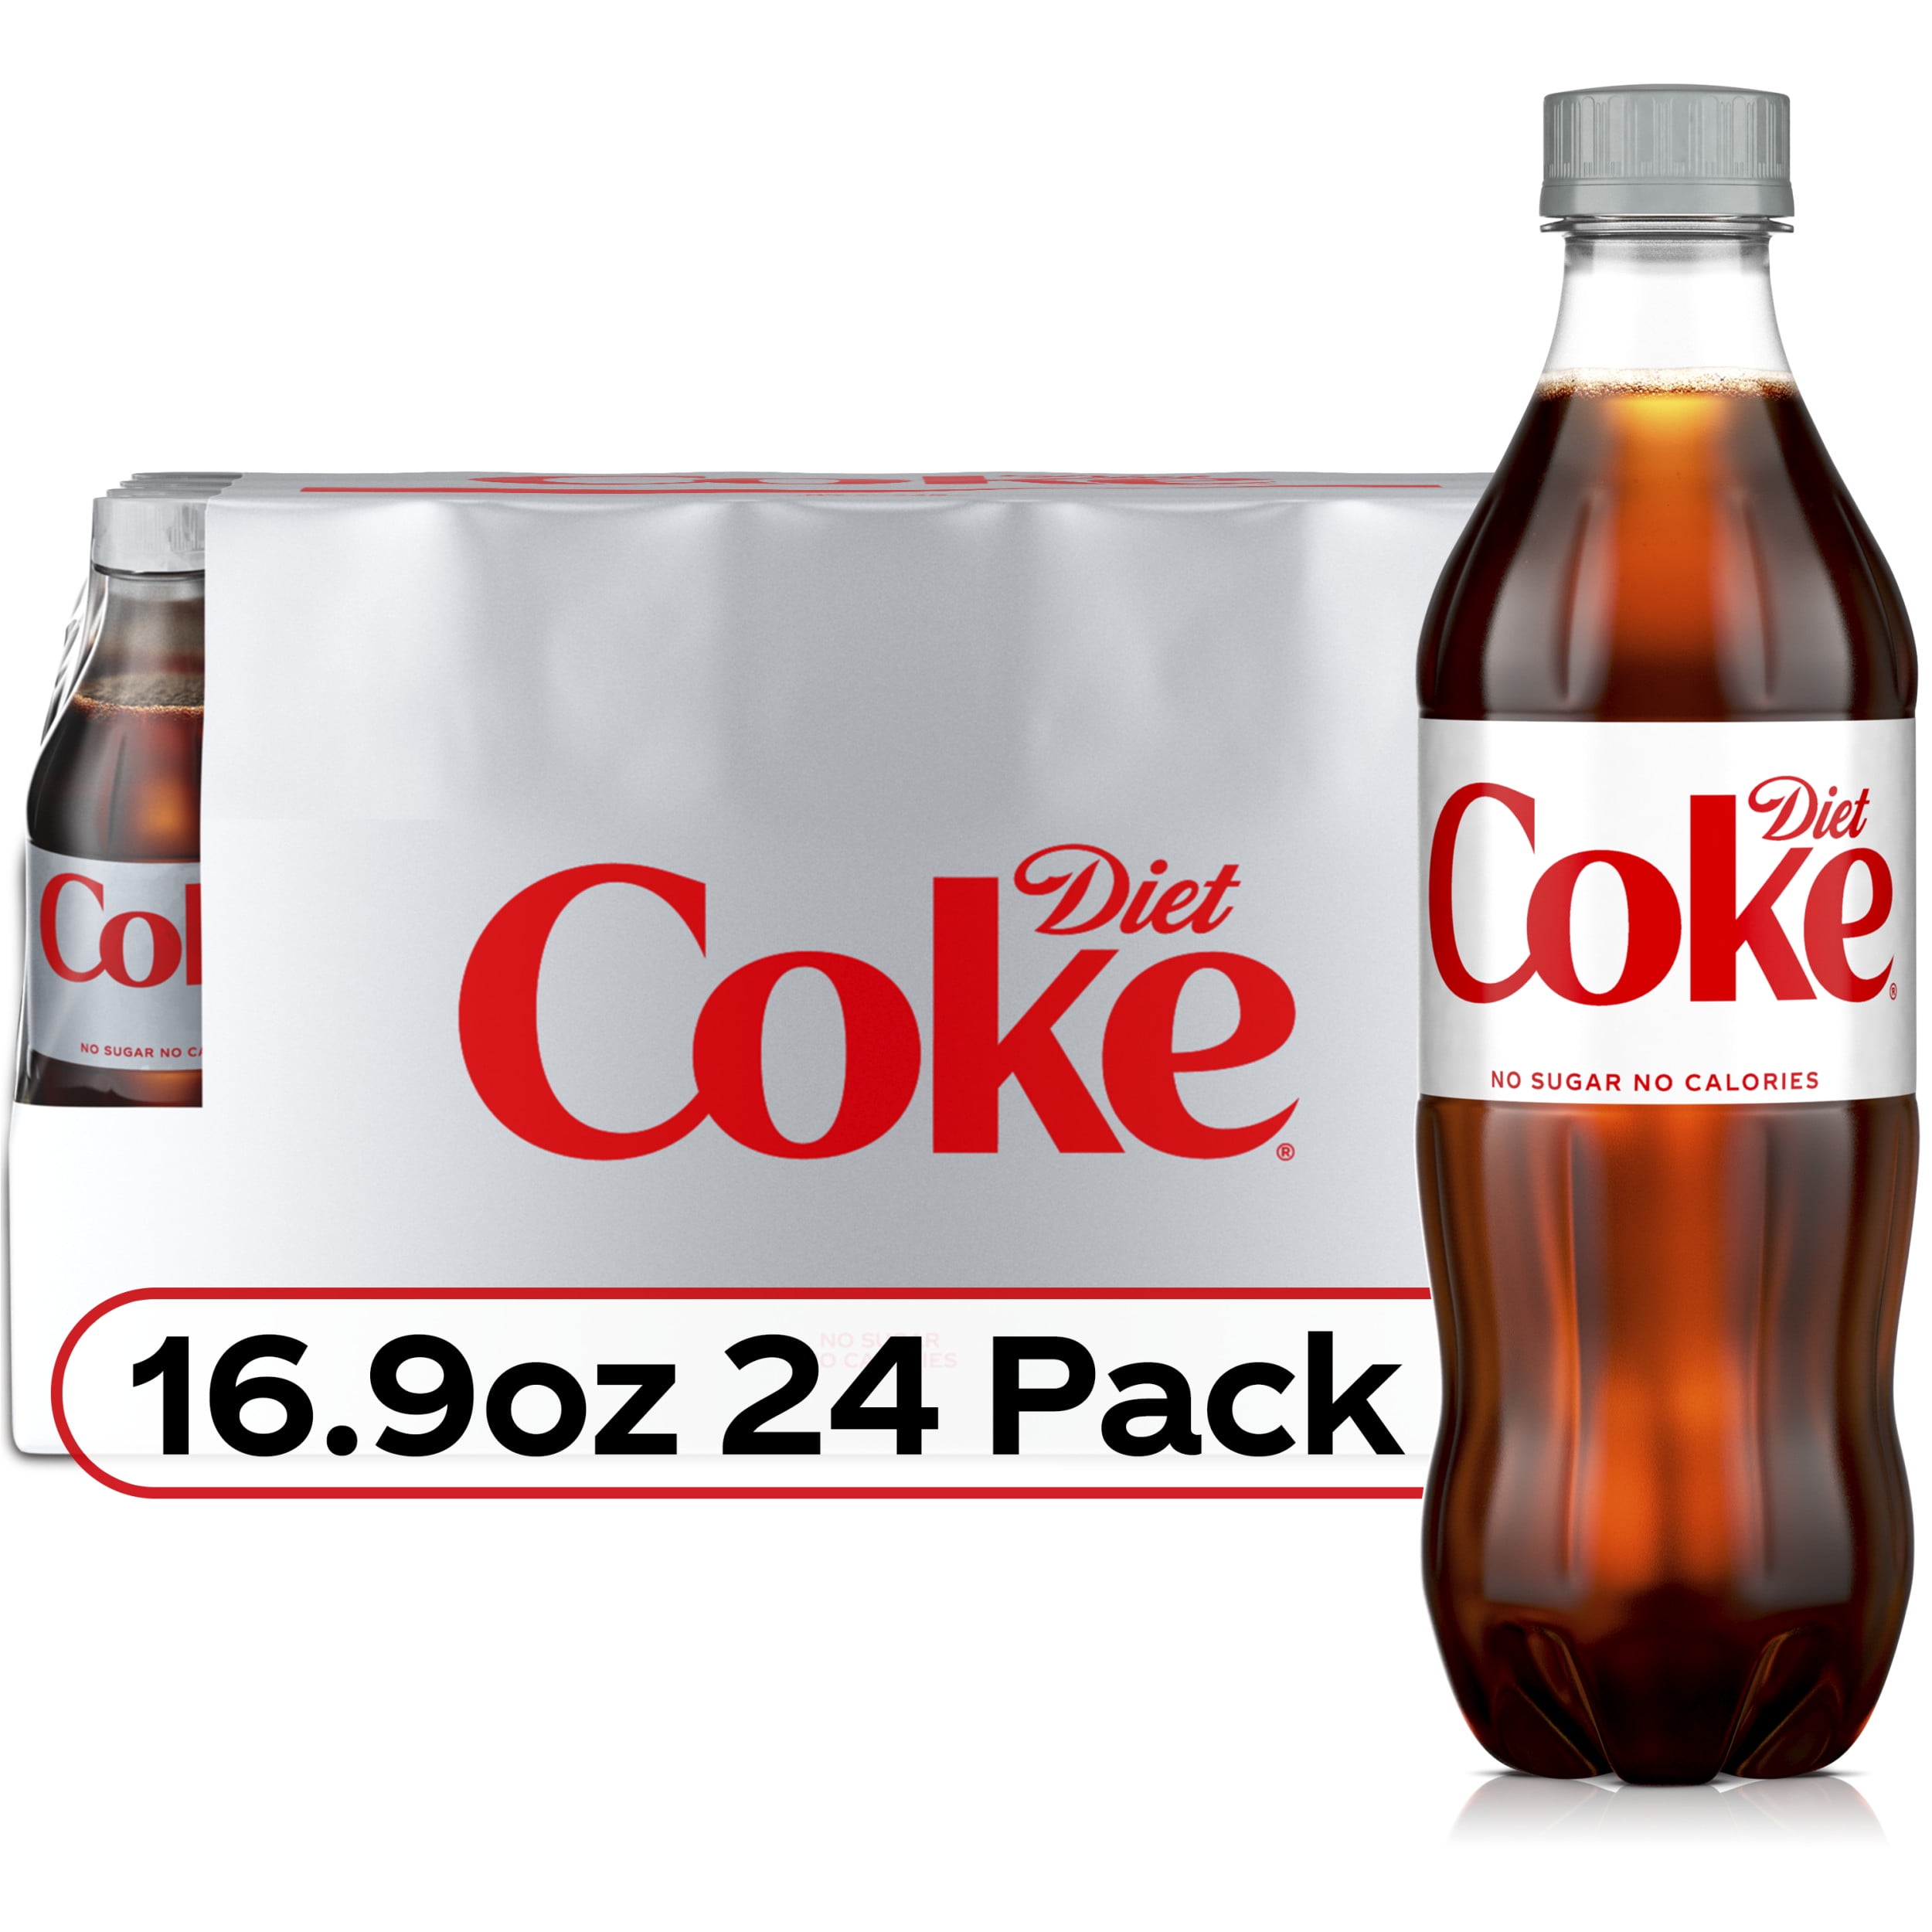 Coca Cola Classic 20 Oz. Bottle - Office Depot